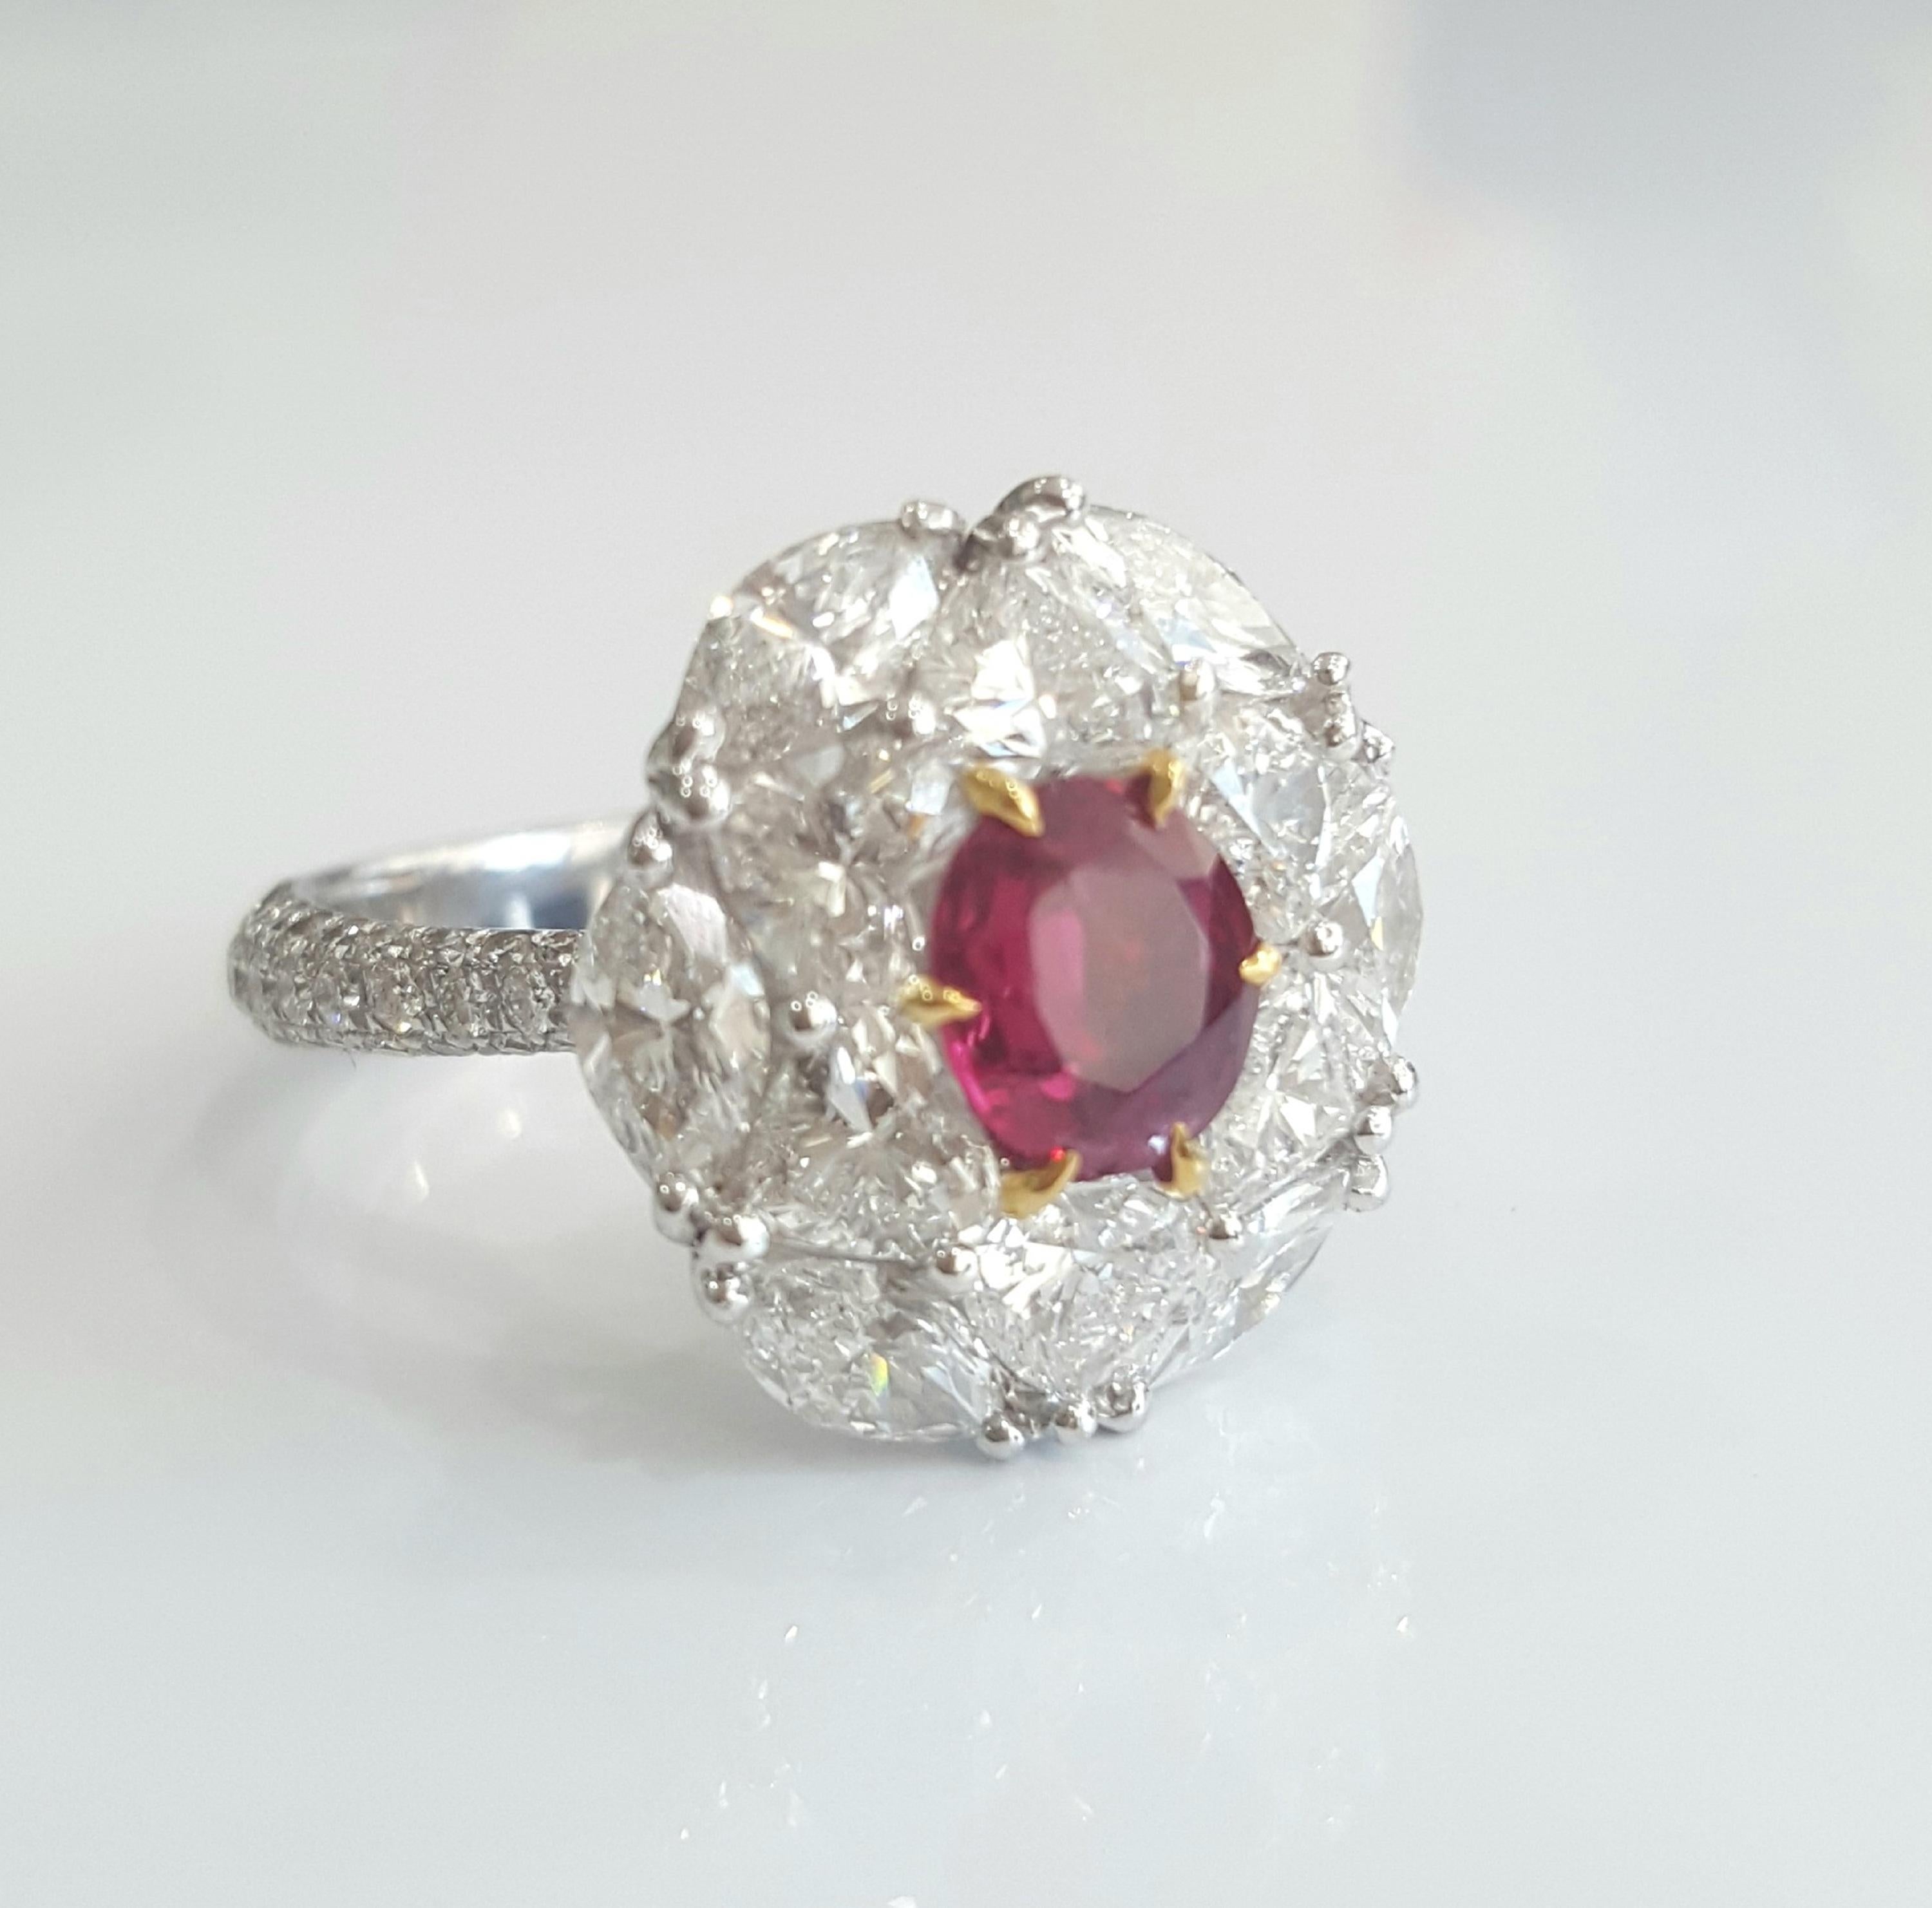 Dieser einzigartige, brillante und außergewöhnliche Ring wurde von Moguldiam Inc. entworfen und ist mit einem IGI-zertifizierten ovalen Rubin besetzt
keine Hitze mit einem Gewicht von 0,93 Karat, umgeben von wunderschön gefassten weißen Diamanten in